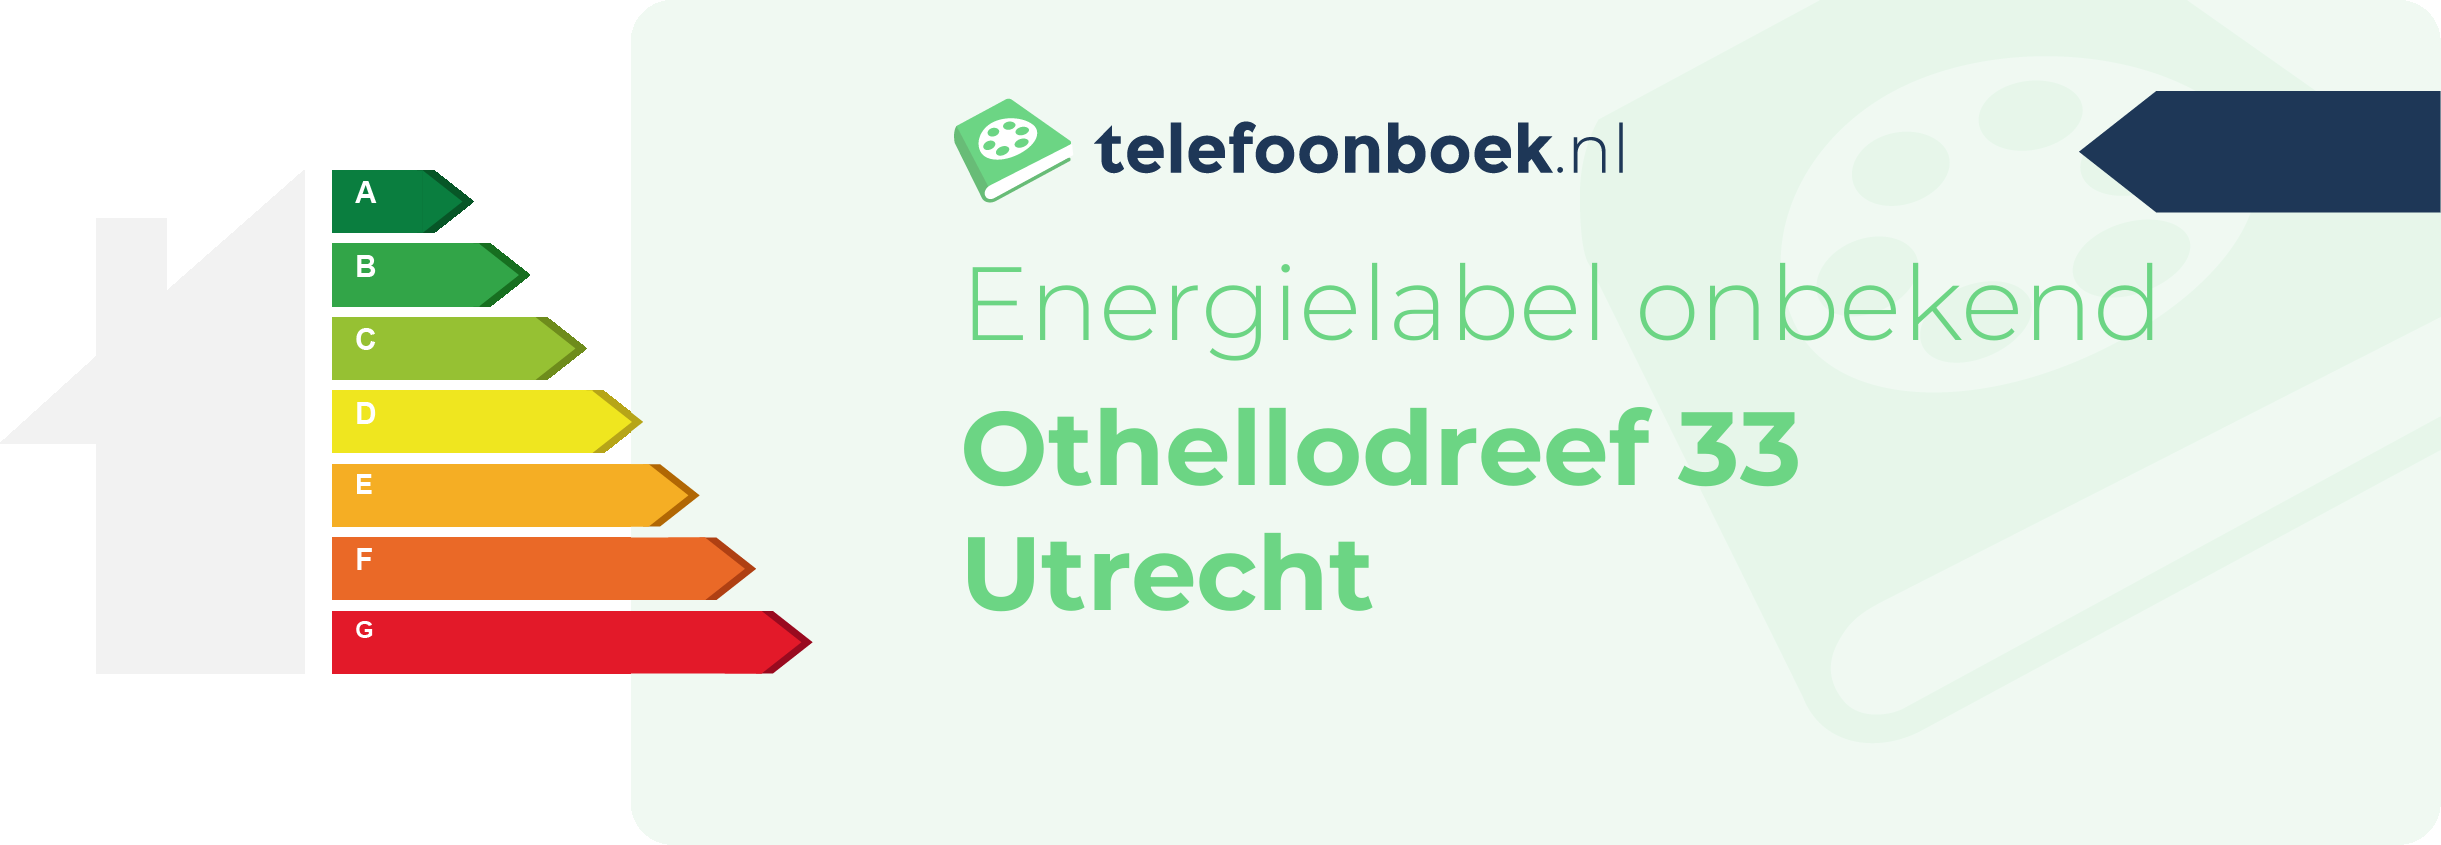 Energielabel Othellodreef 33 Utrecht